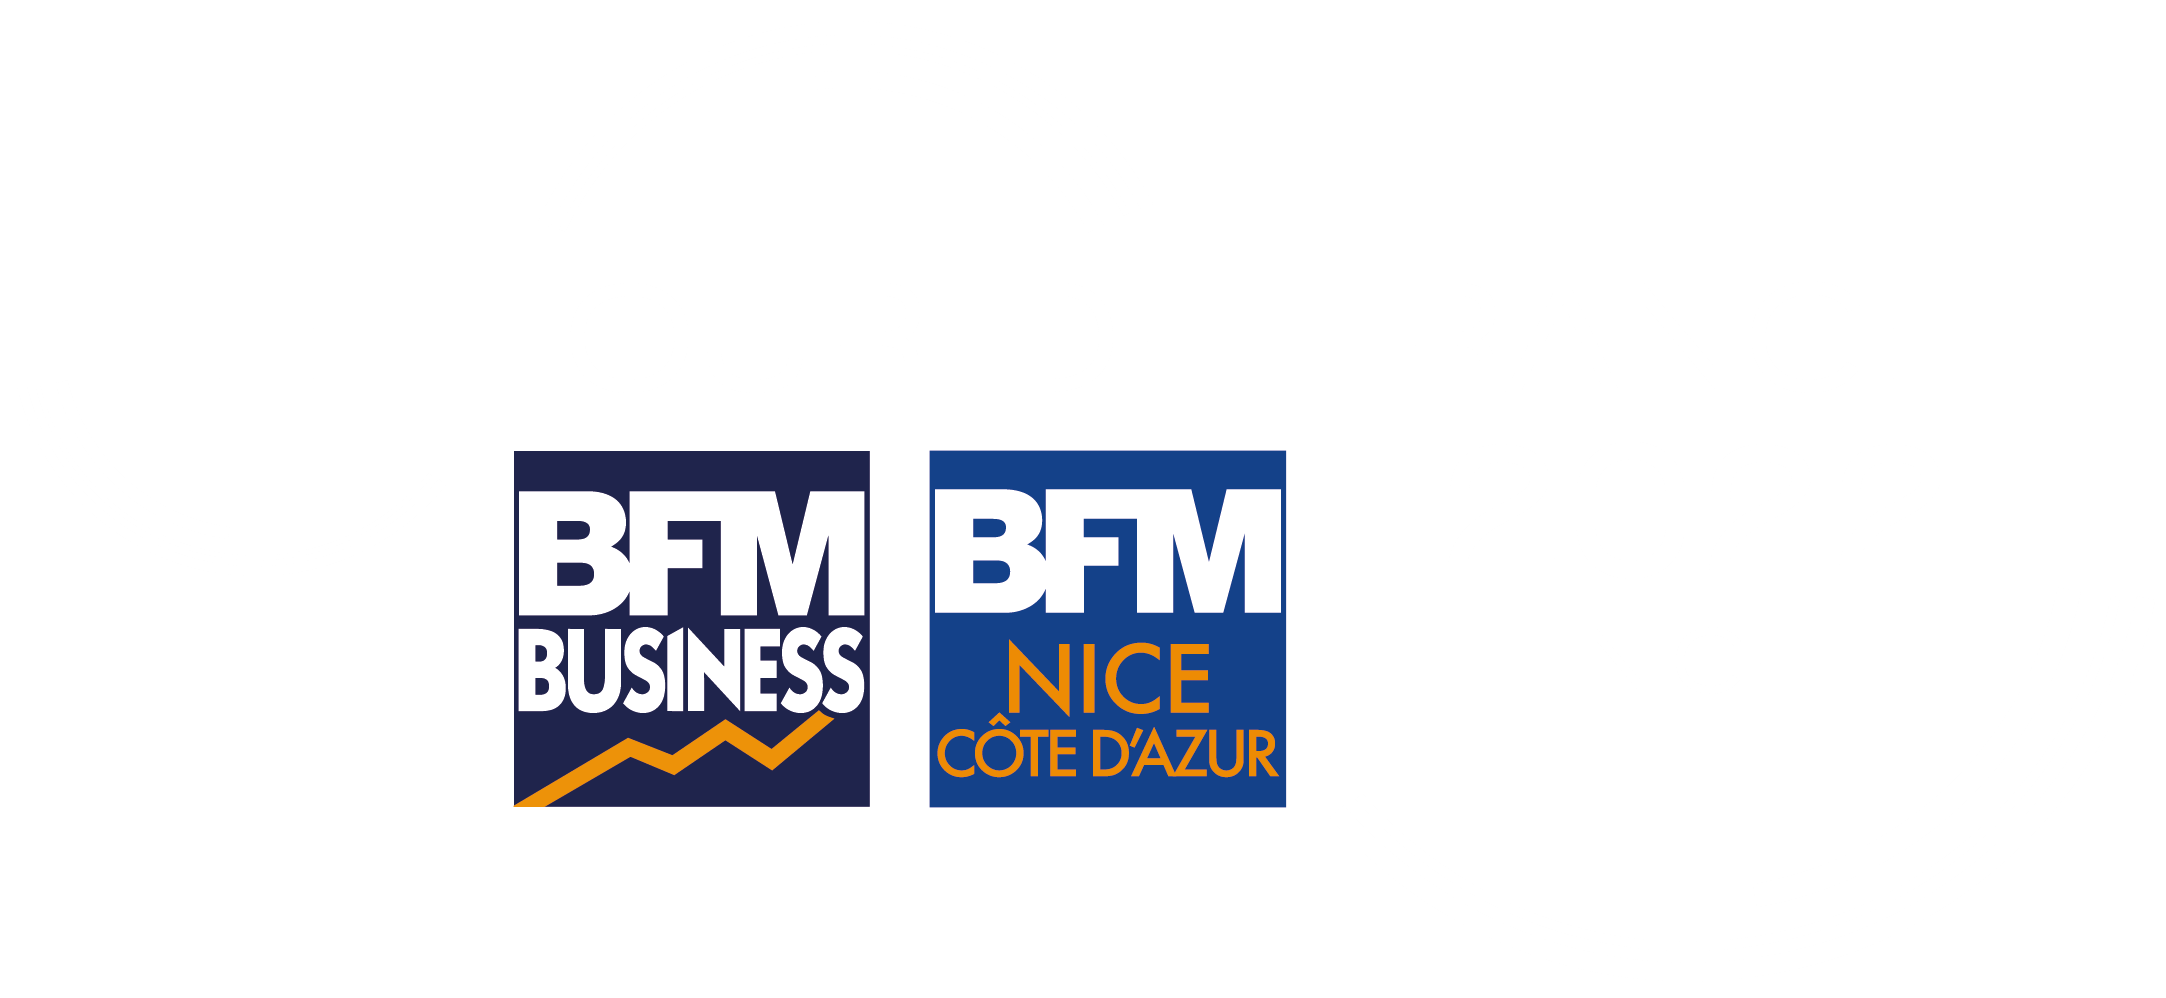 Tour de France BFM Business Nice